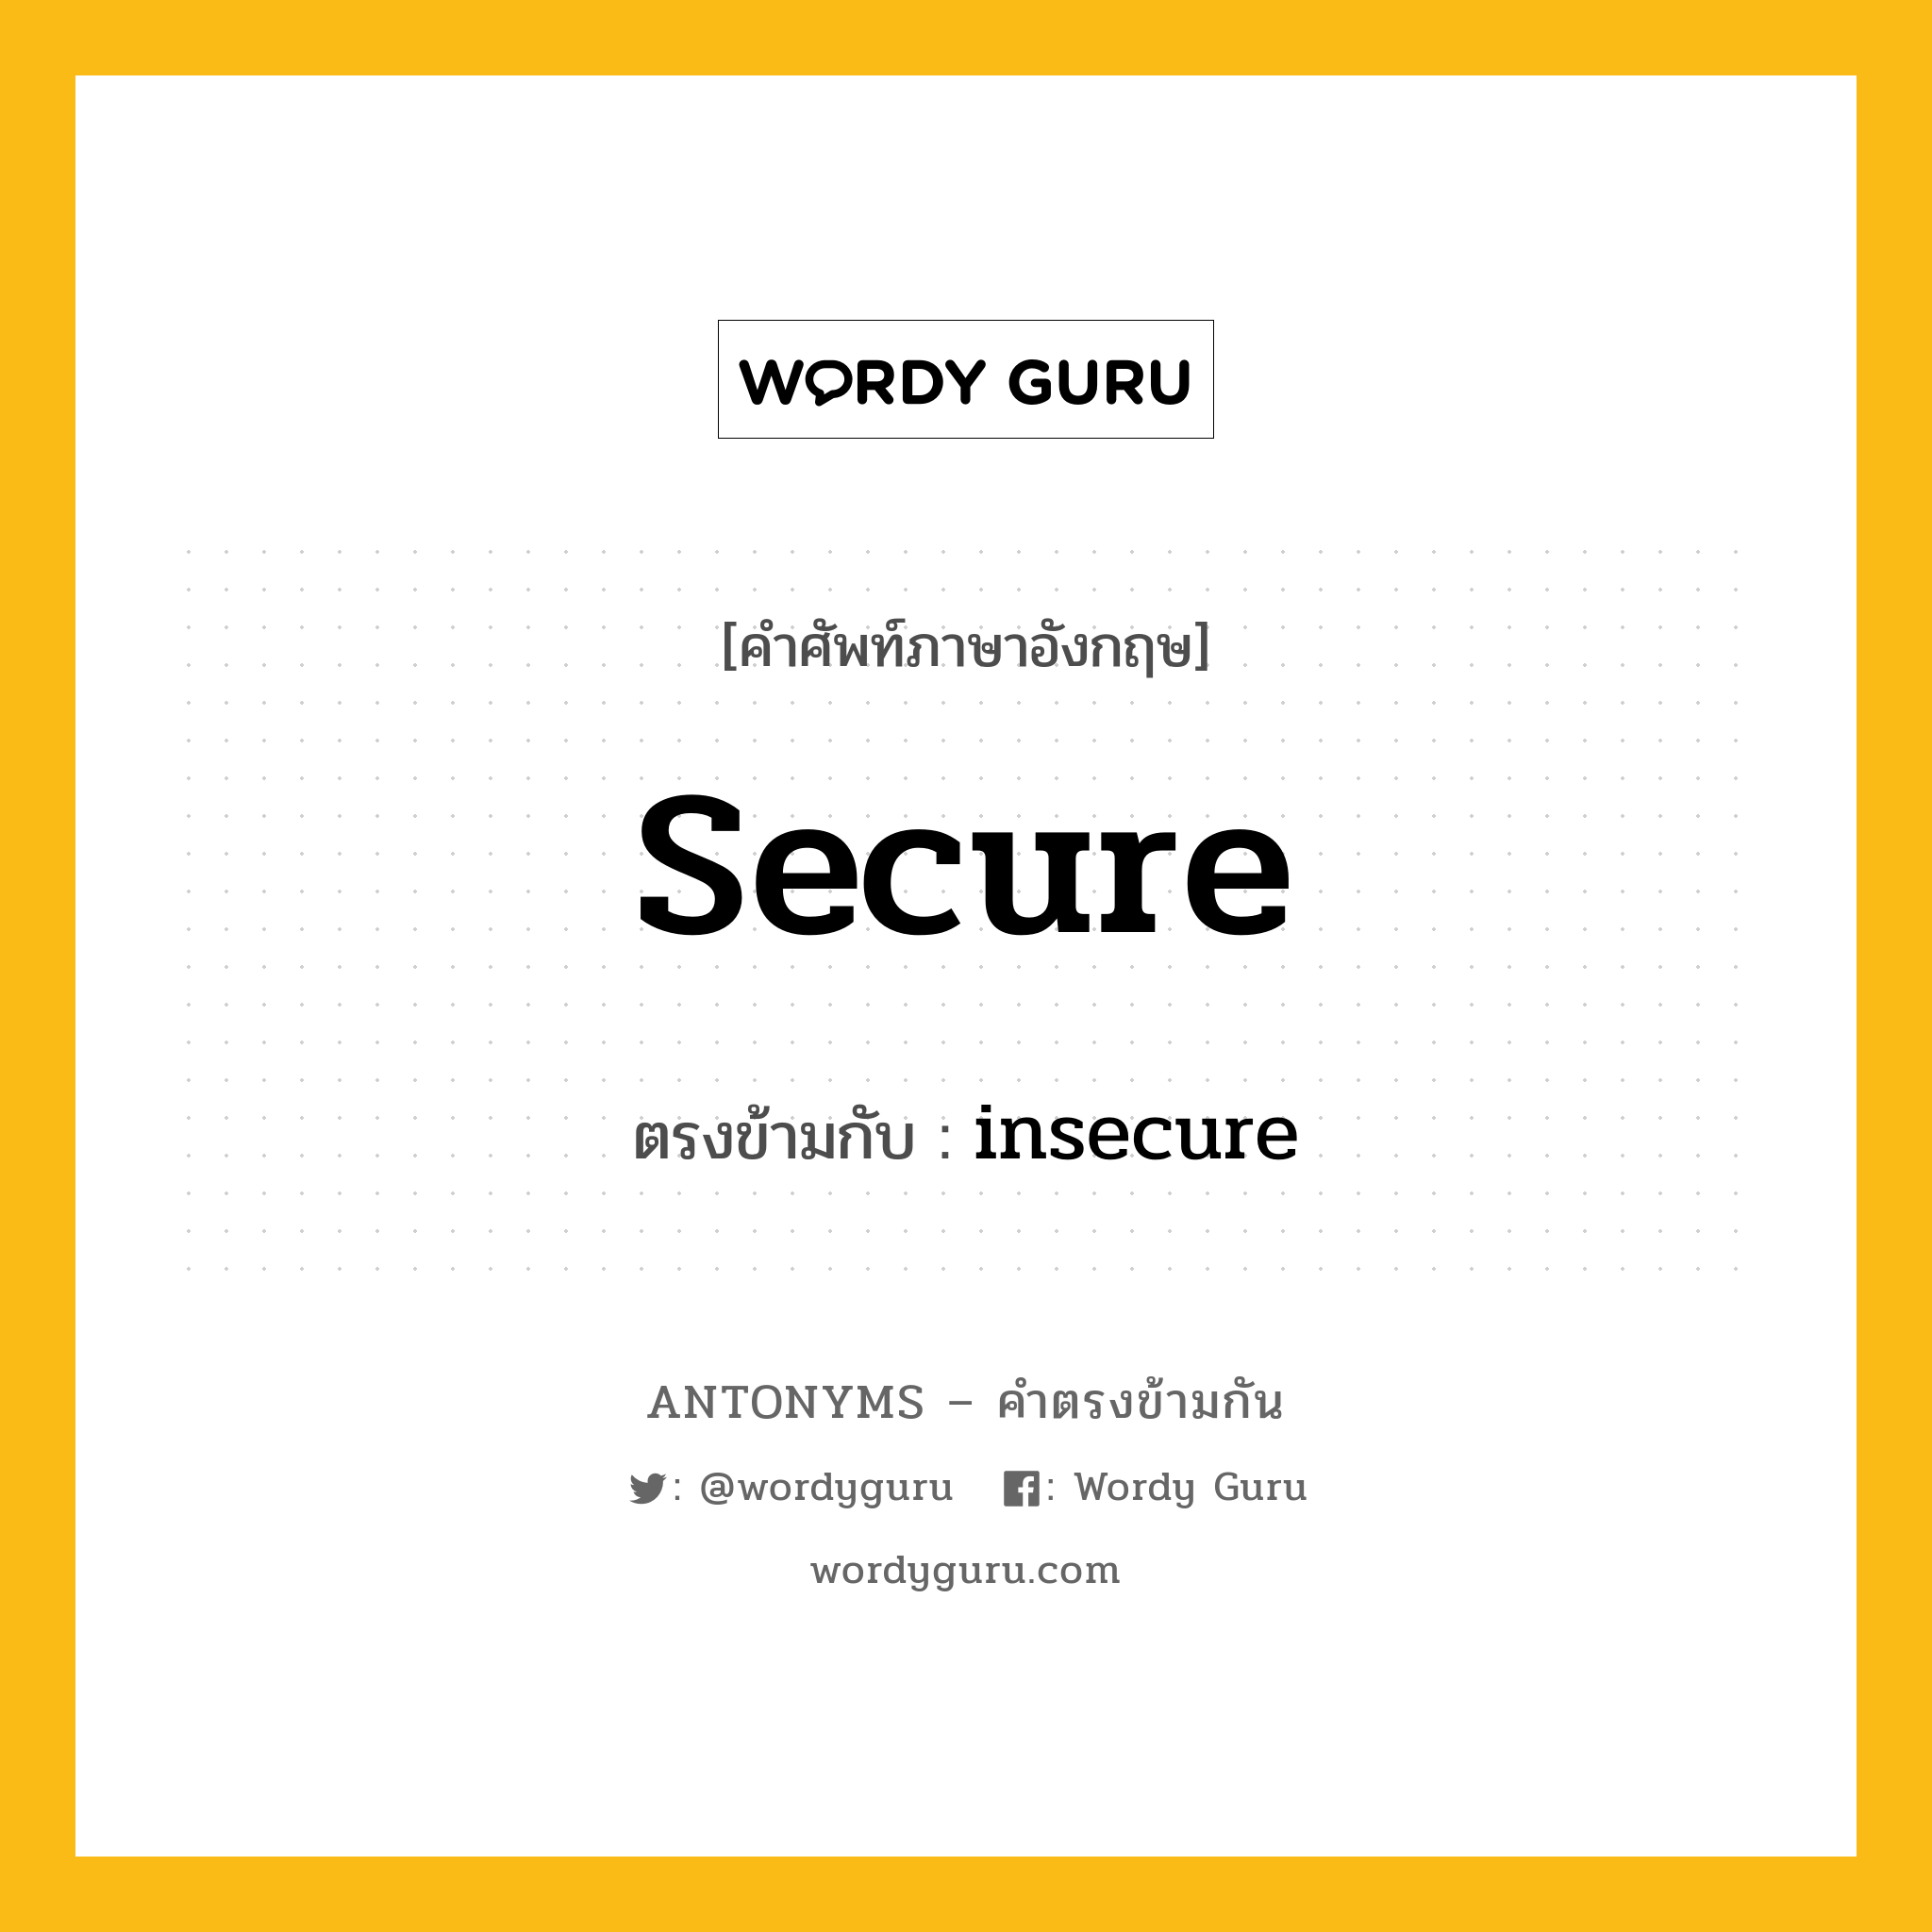 secure เป็นคำตรงข้ามกับคำไหนบ้าง?, คำศัพท์ภาษาอังกฤษ secure ตรงข้ามกับ insecure หมวด insecure